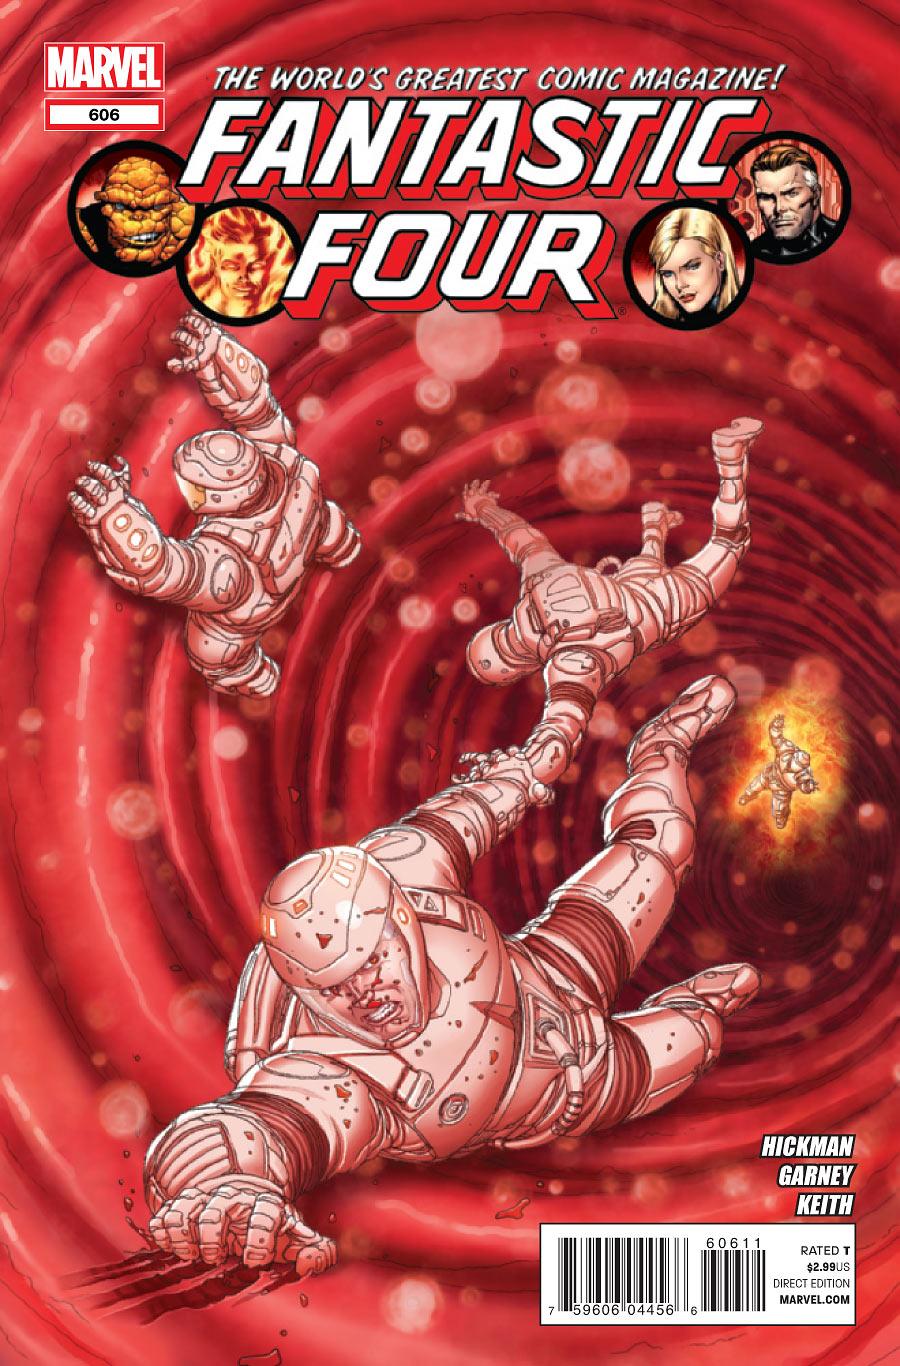 Fantastic Four Vol. 1 #606